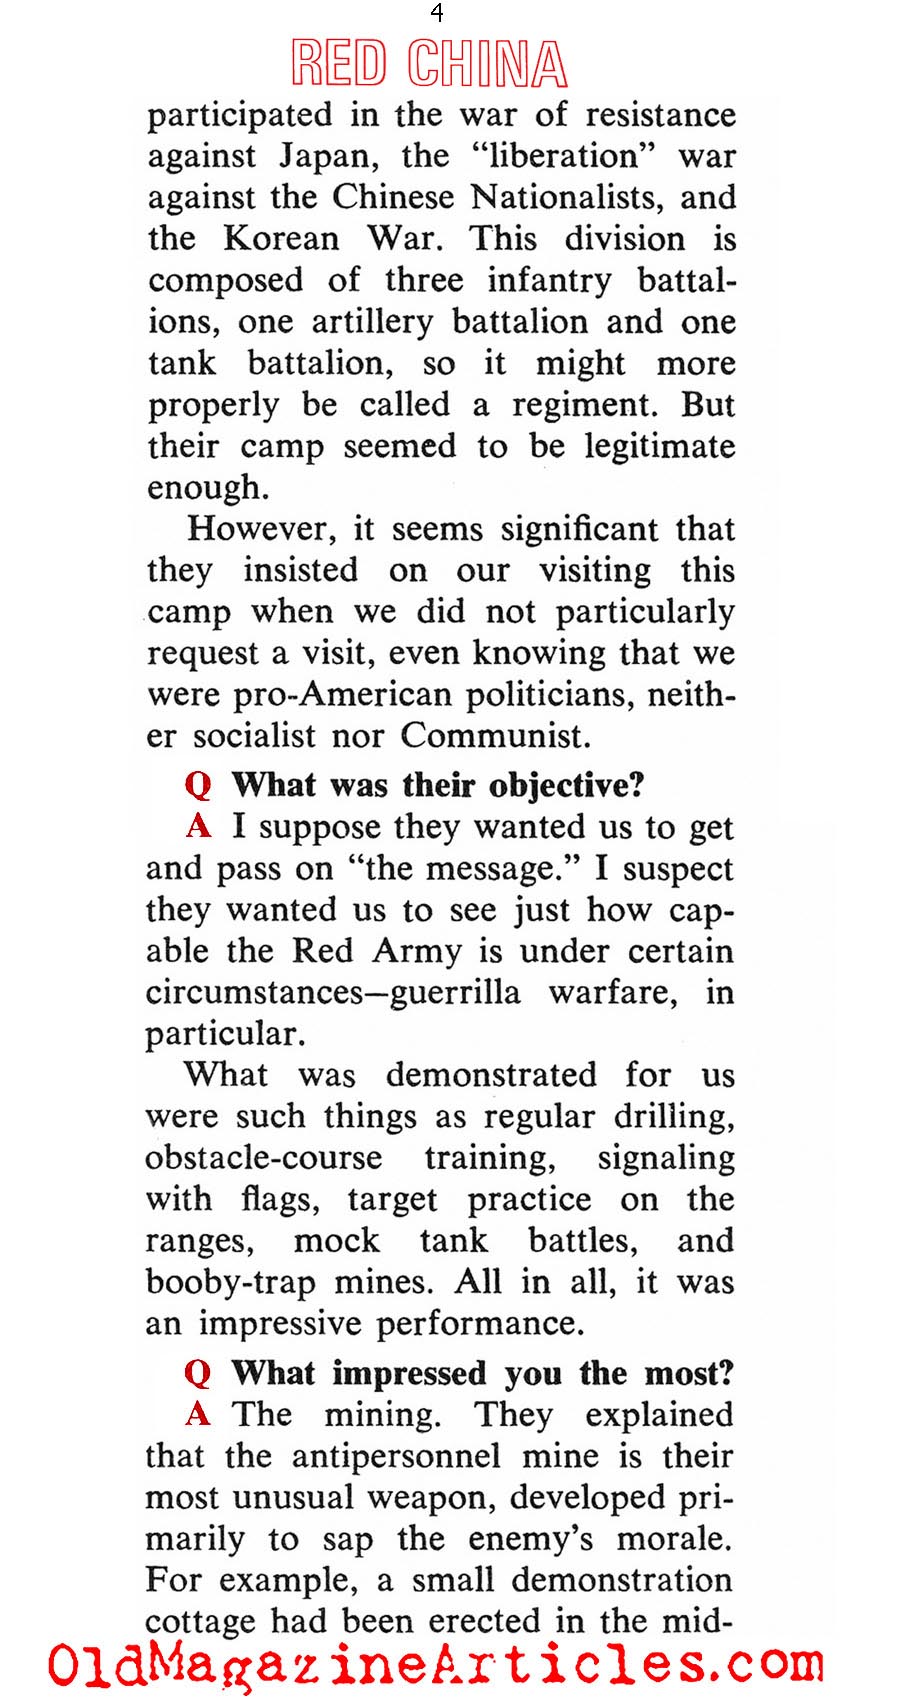 How Dangerous is Red China (Coronet Magazine, 1967)